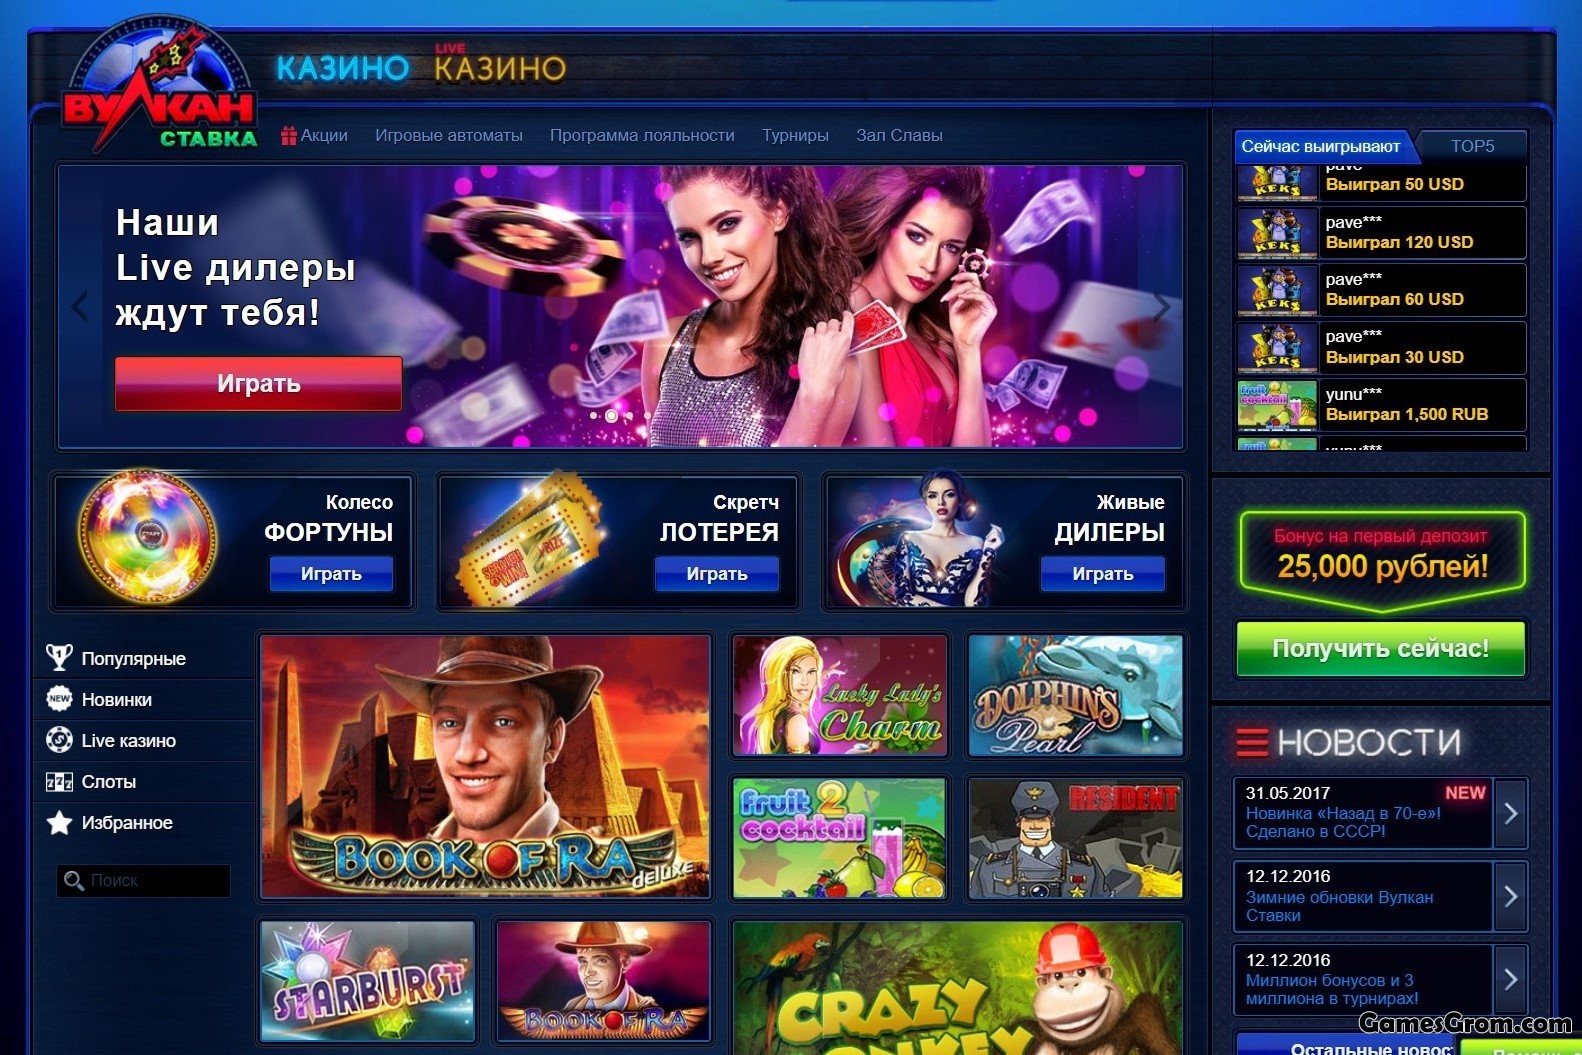 Казино онлайн вулкан клуб на русском языке fruit chance casino